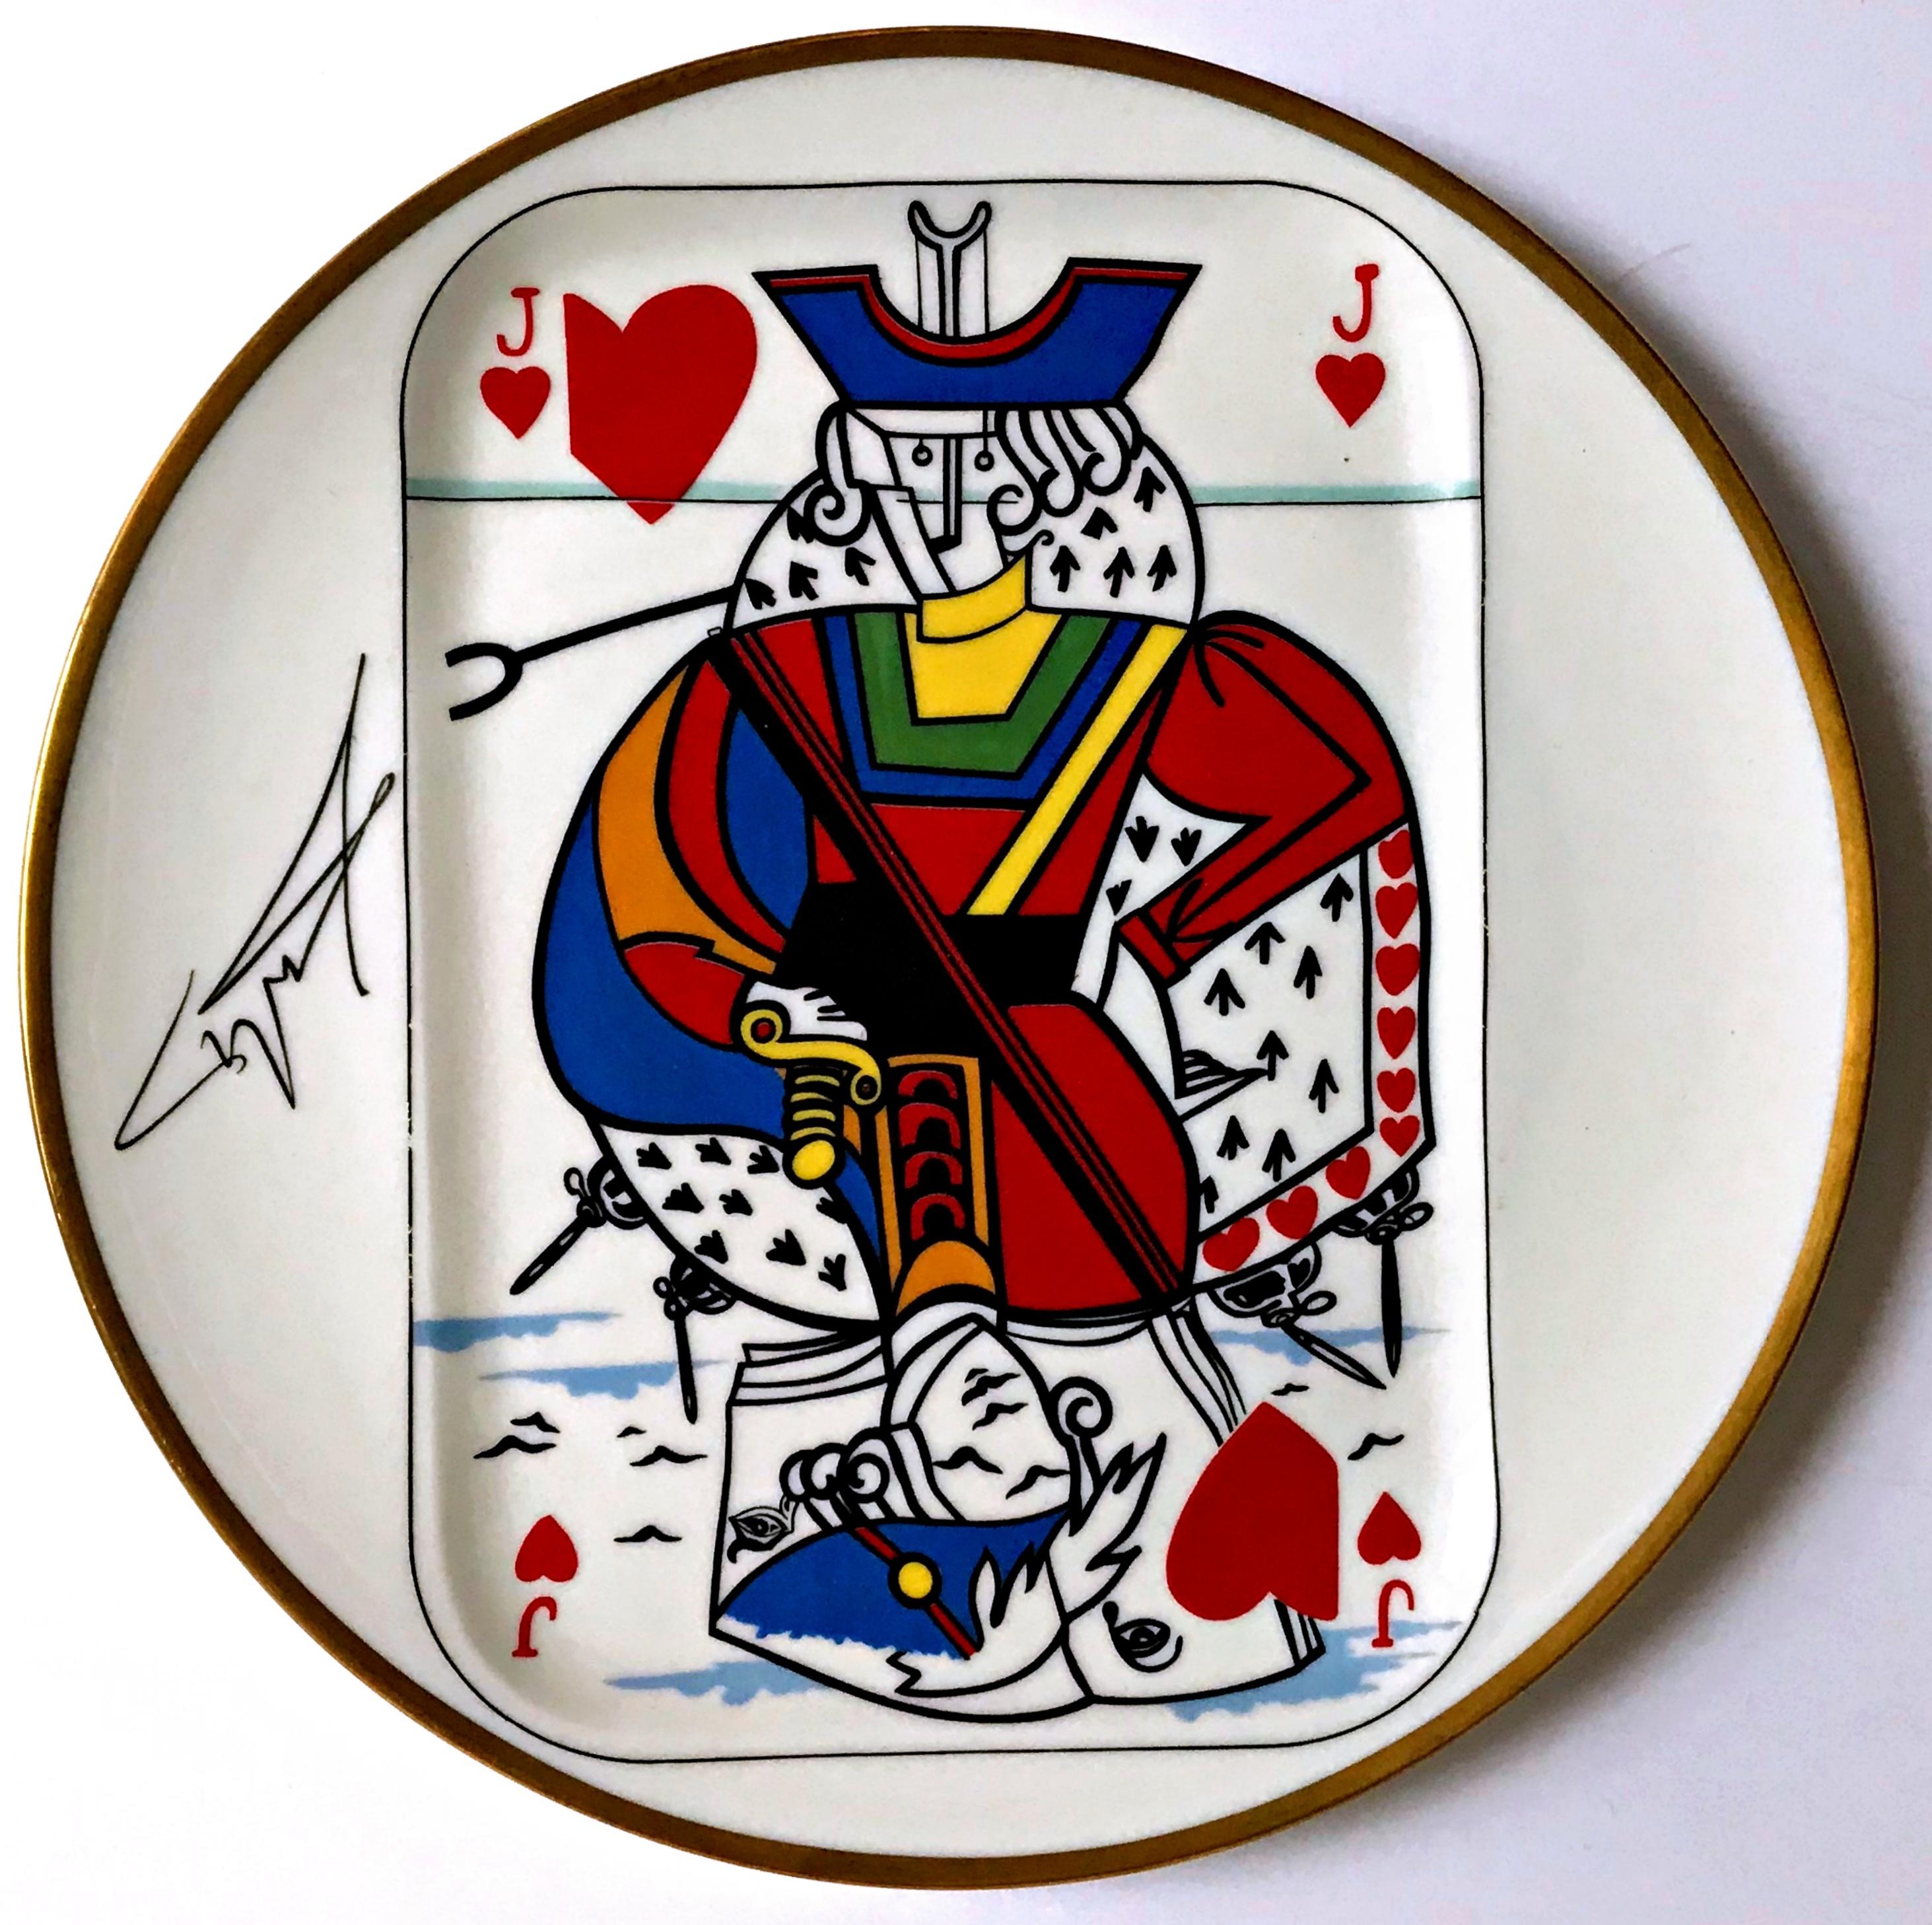 Jack of Hearts - assiette en porcelaine en édition limitée fabriquée en France  - Mixed Media Art de Salvador Dalí